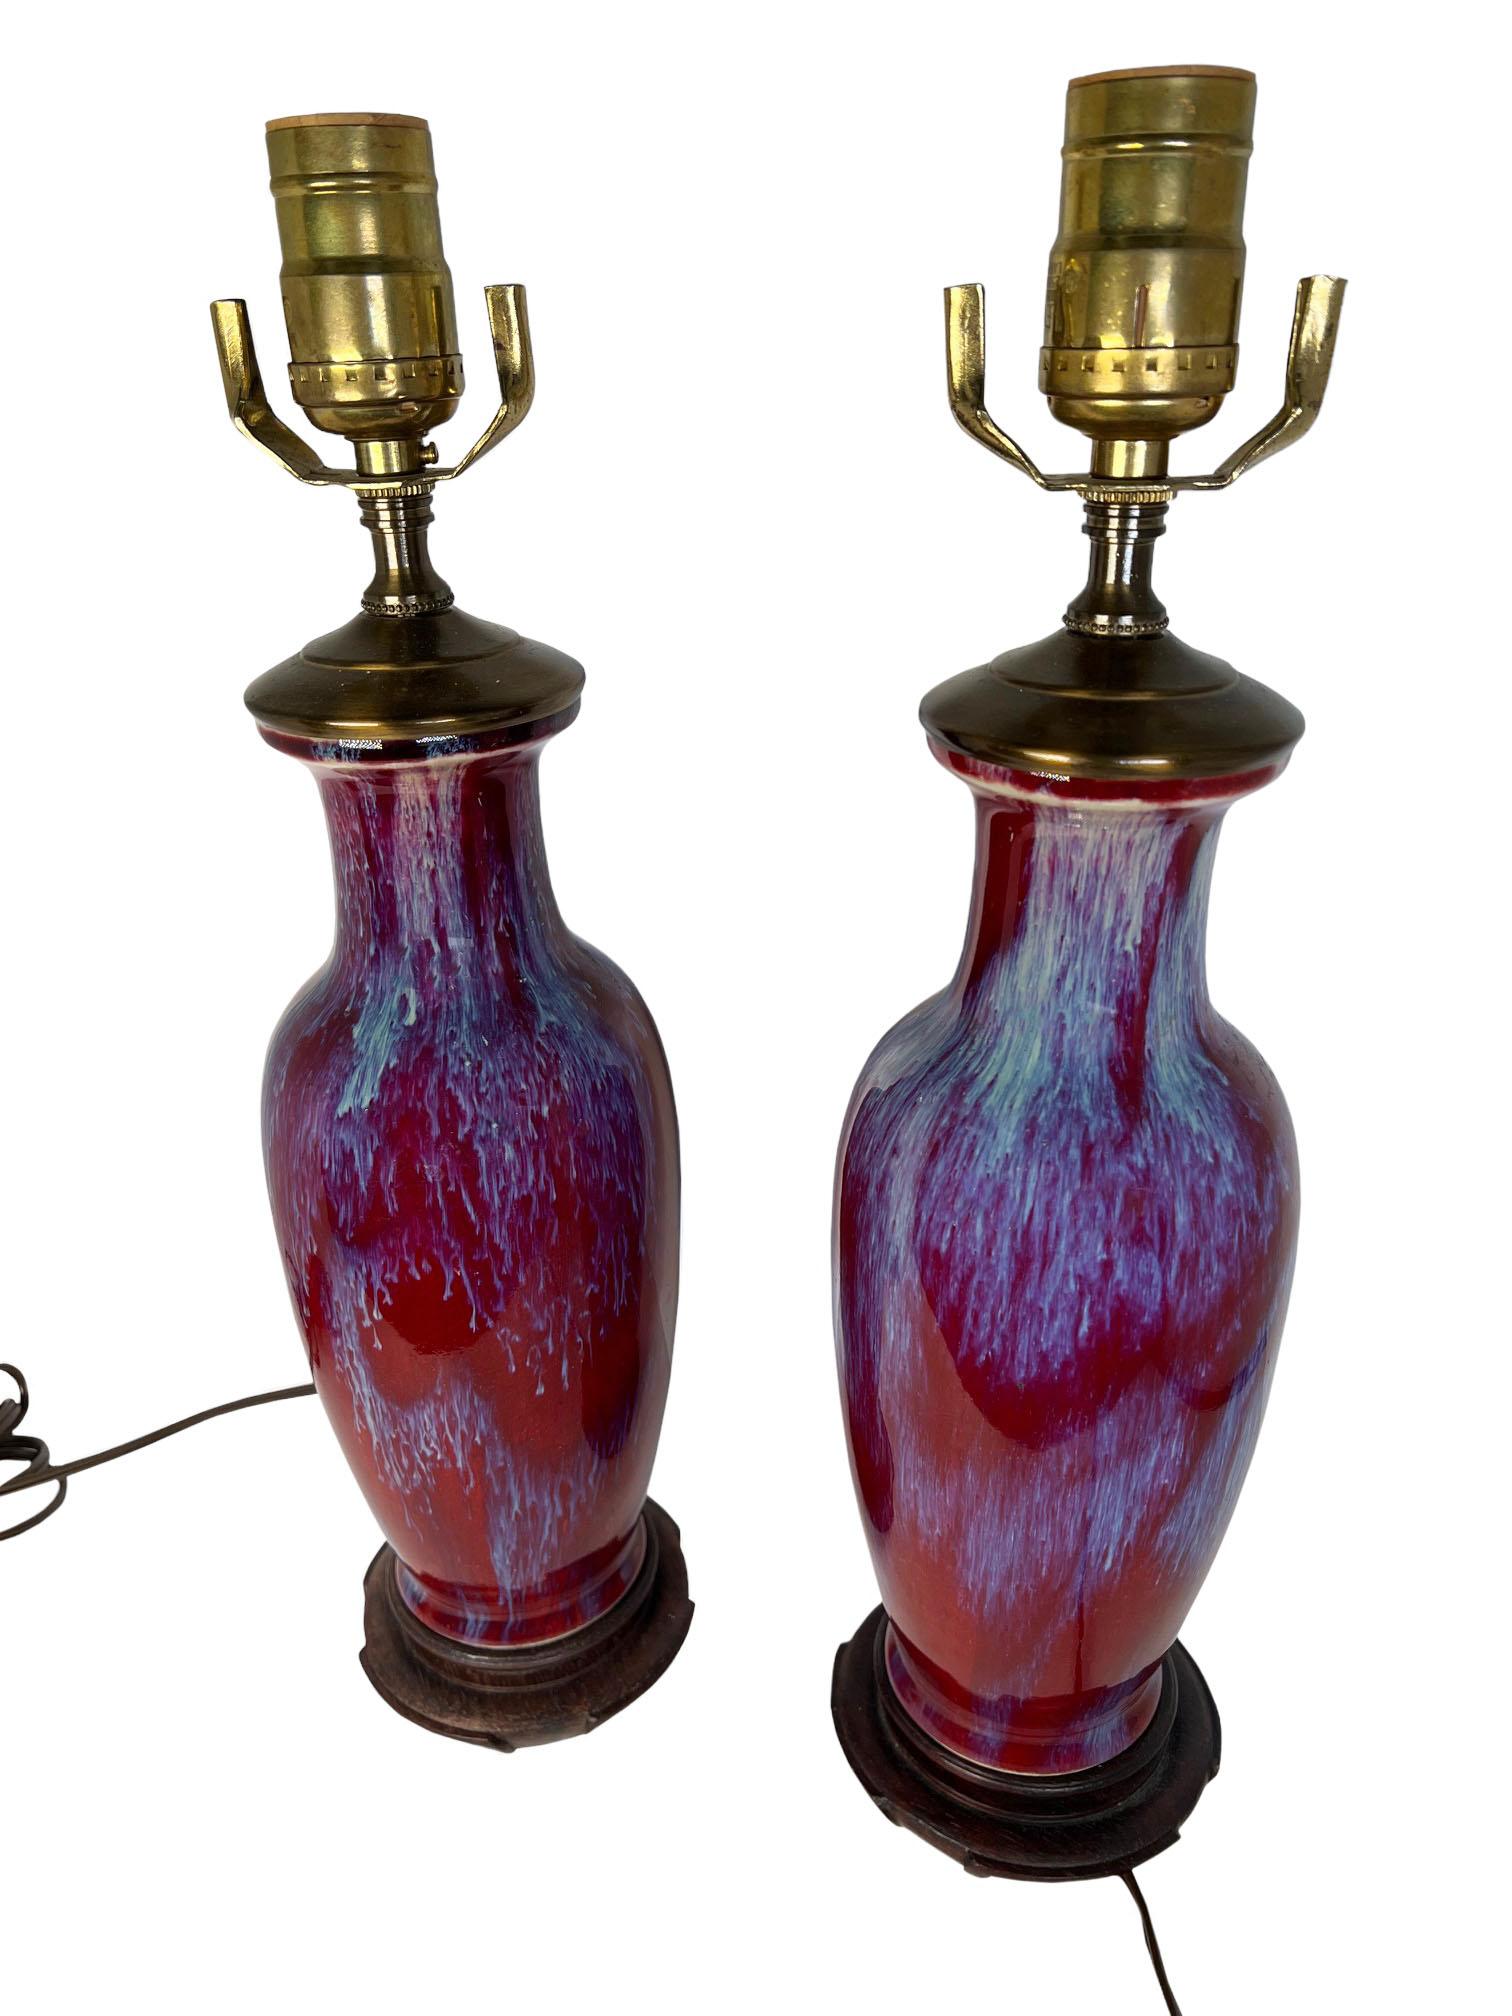 Paire de vases Sung de Bœuf transformés en lampes avec des bases en bois. 20e siècle Chine.